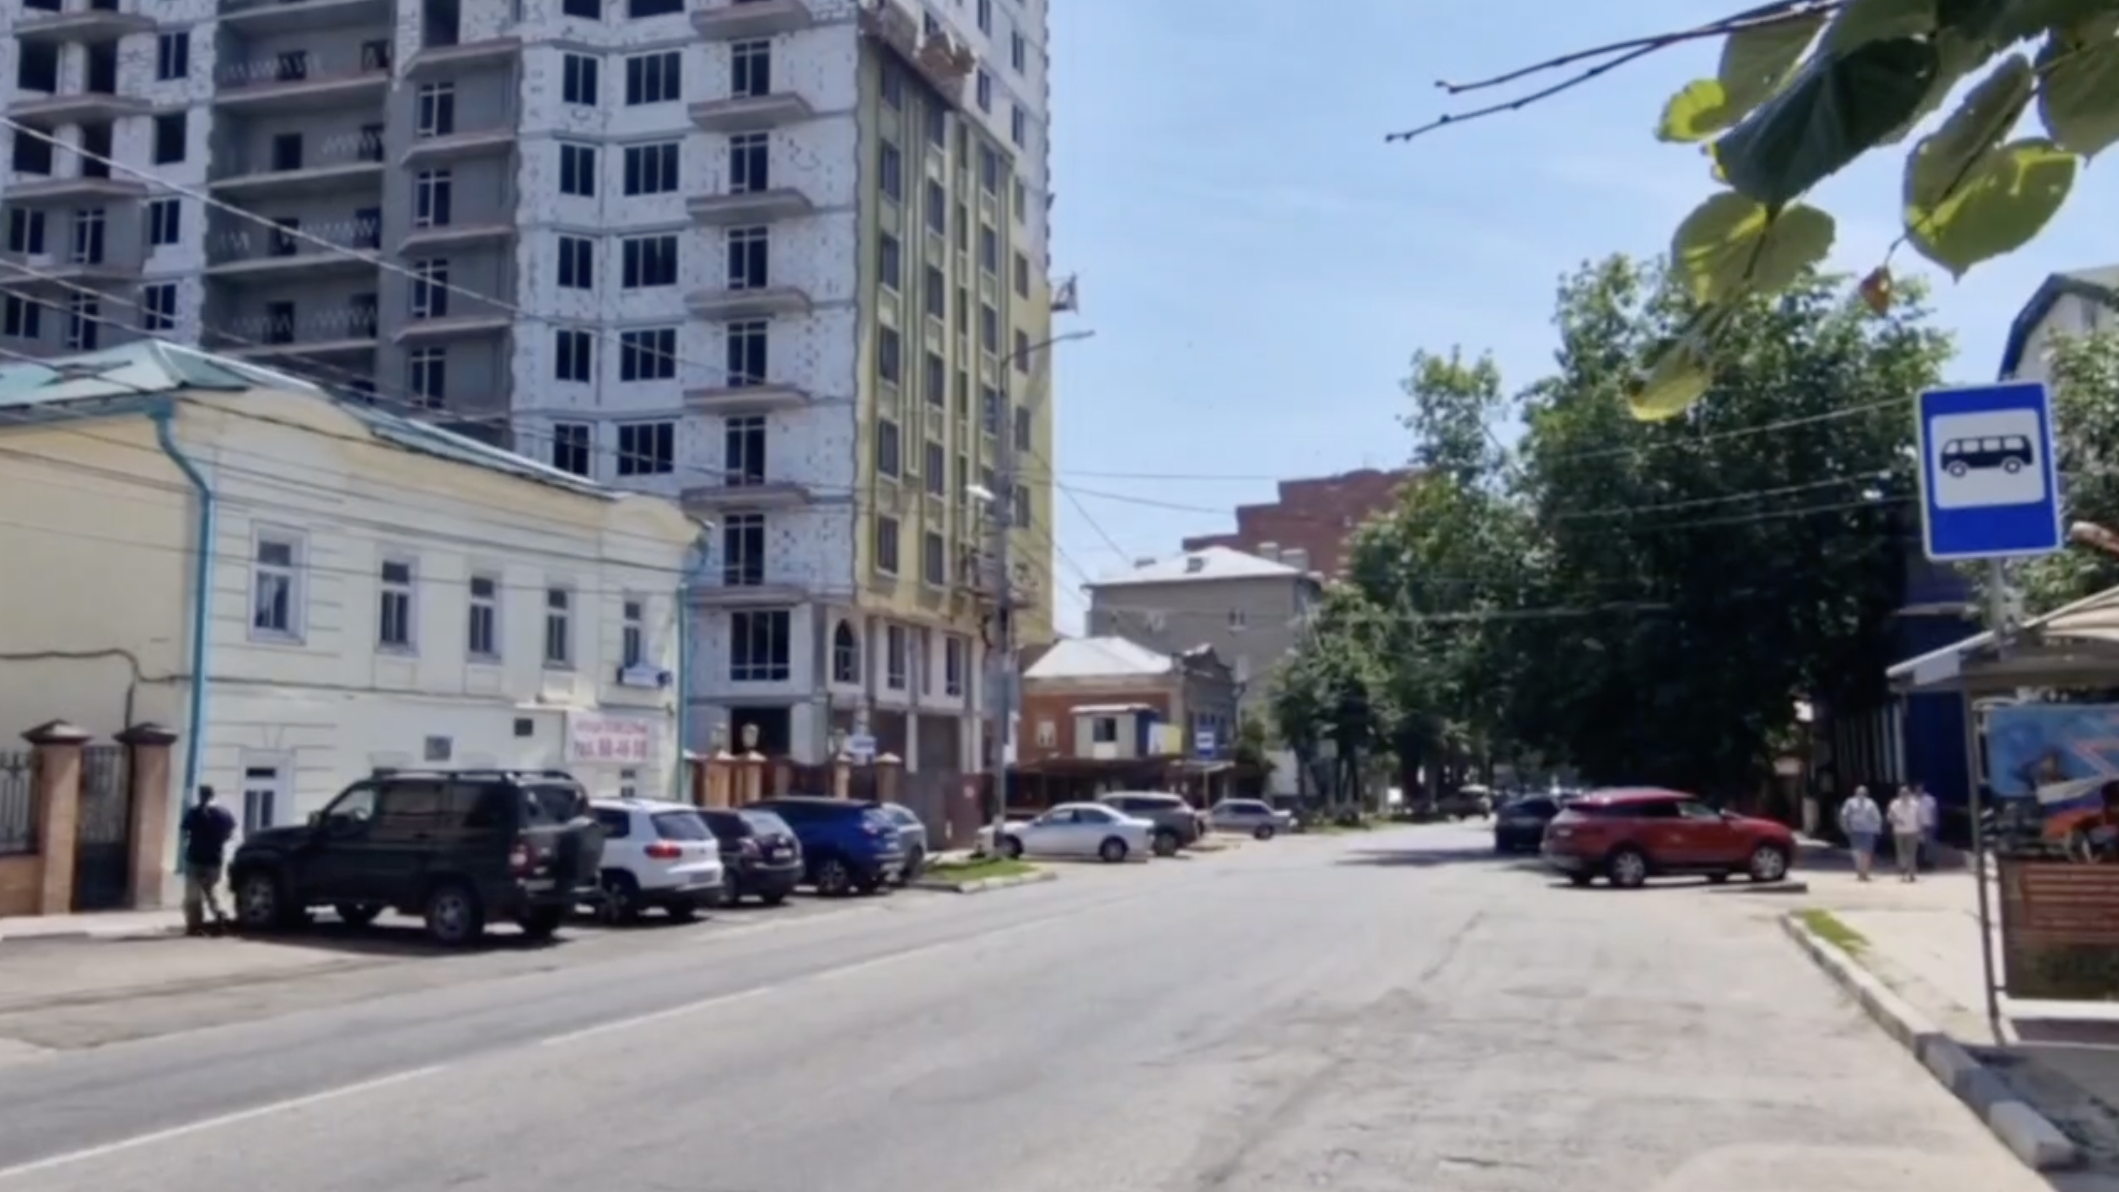 Депутат Кузин обратится в суд из-за строительства «небоскреба» в историческом центре Ульяновска